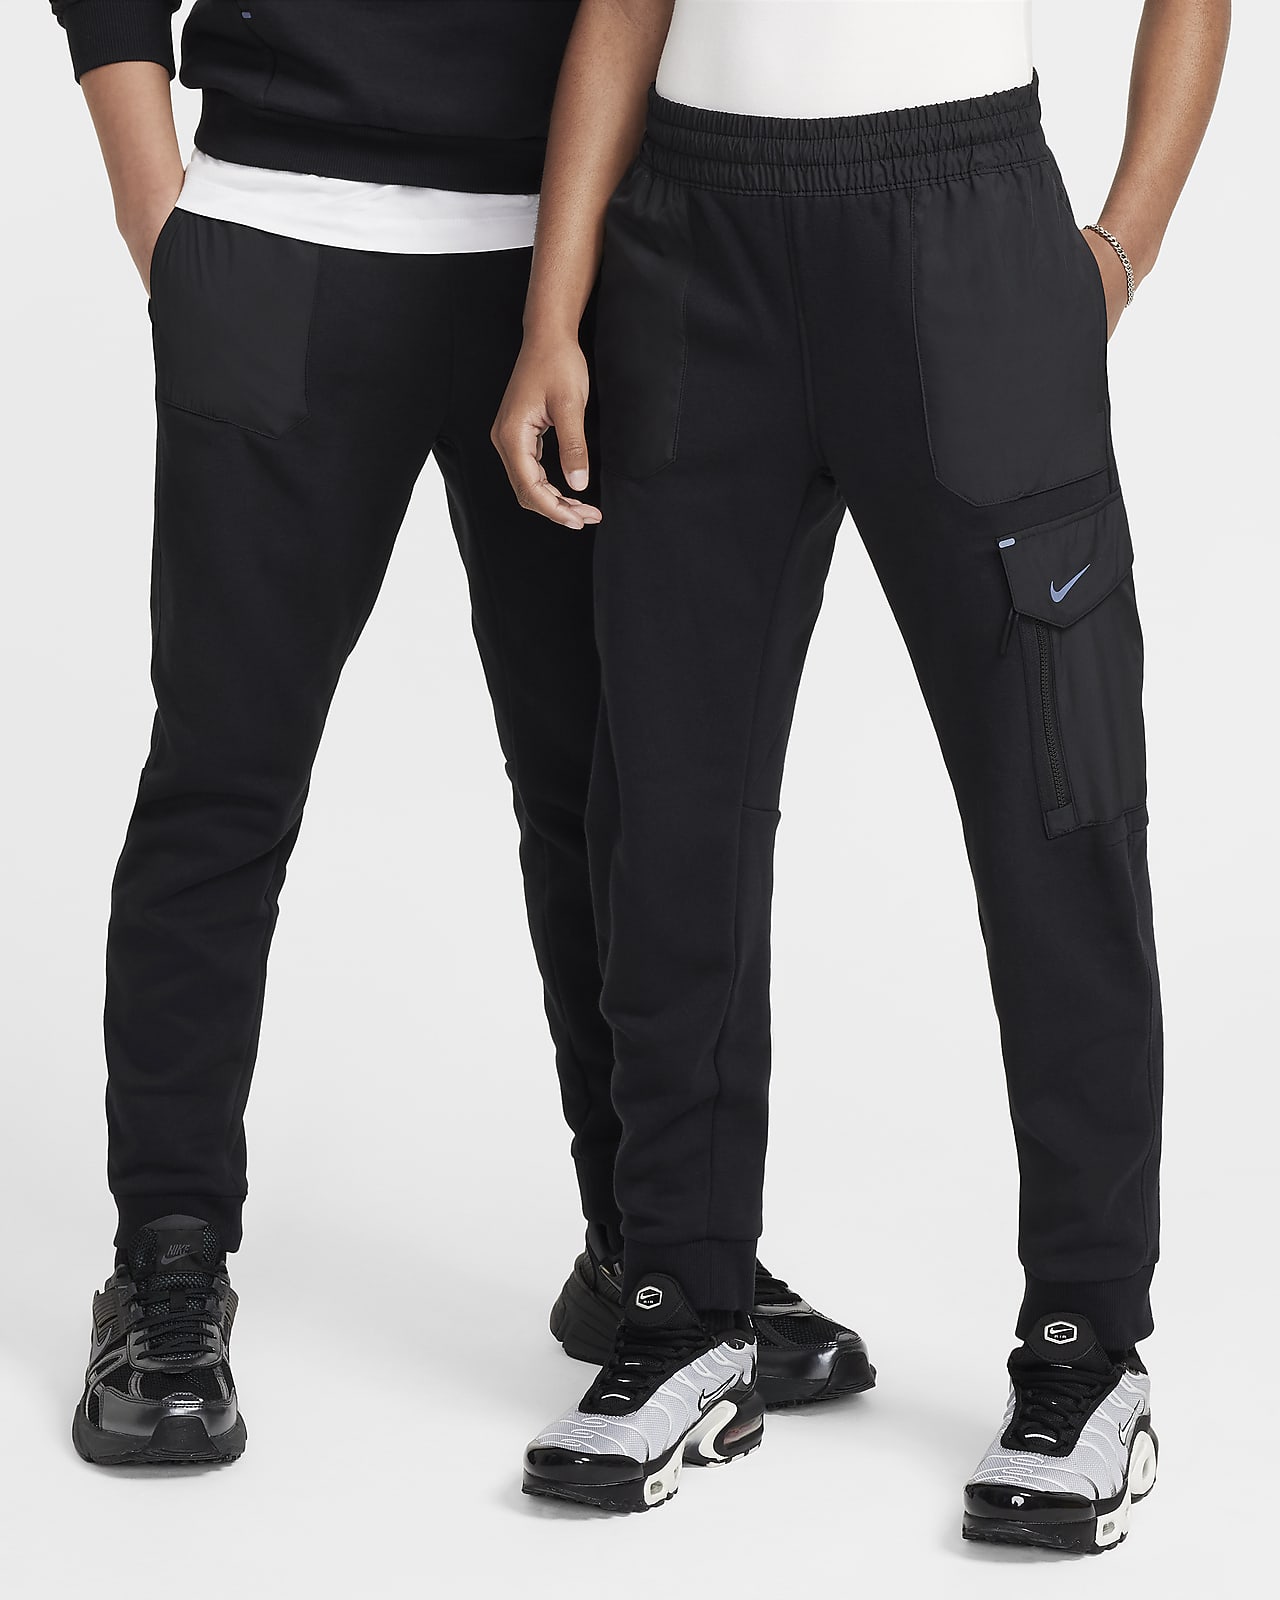 Nike Sportswear City Utility EasyOn Older Kids' Fleece Trousers